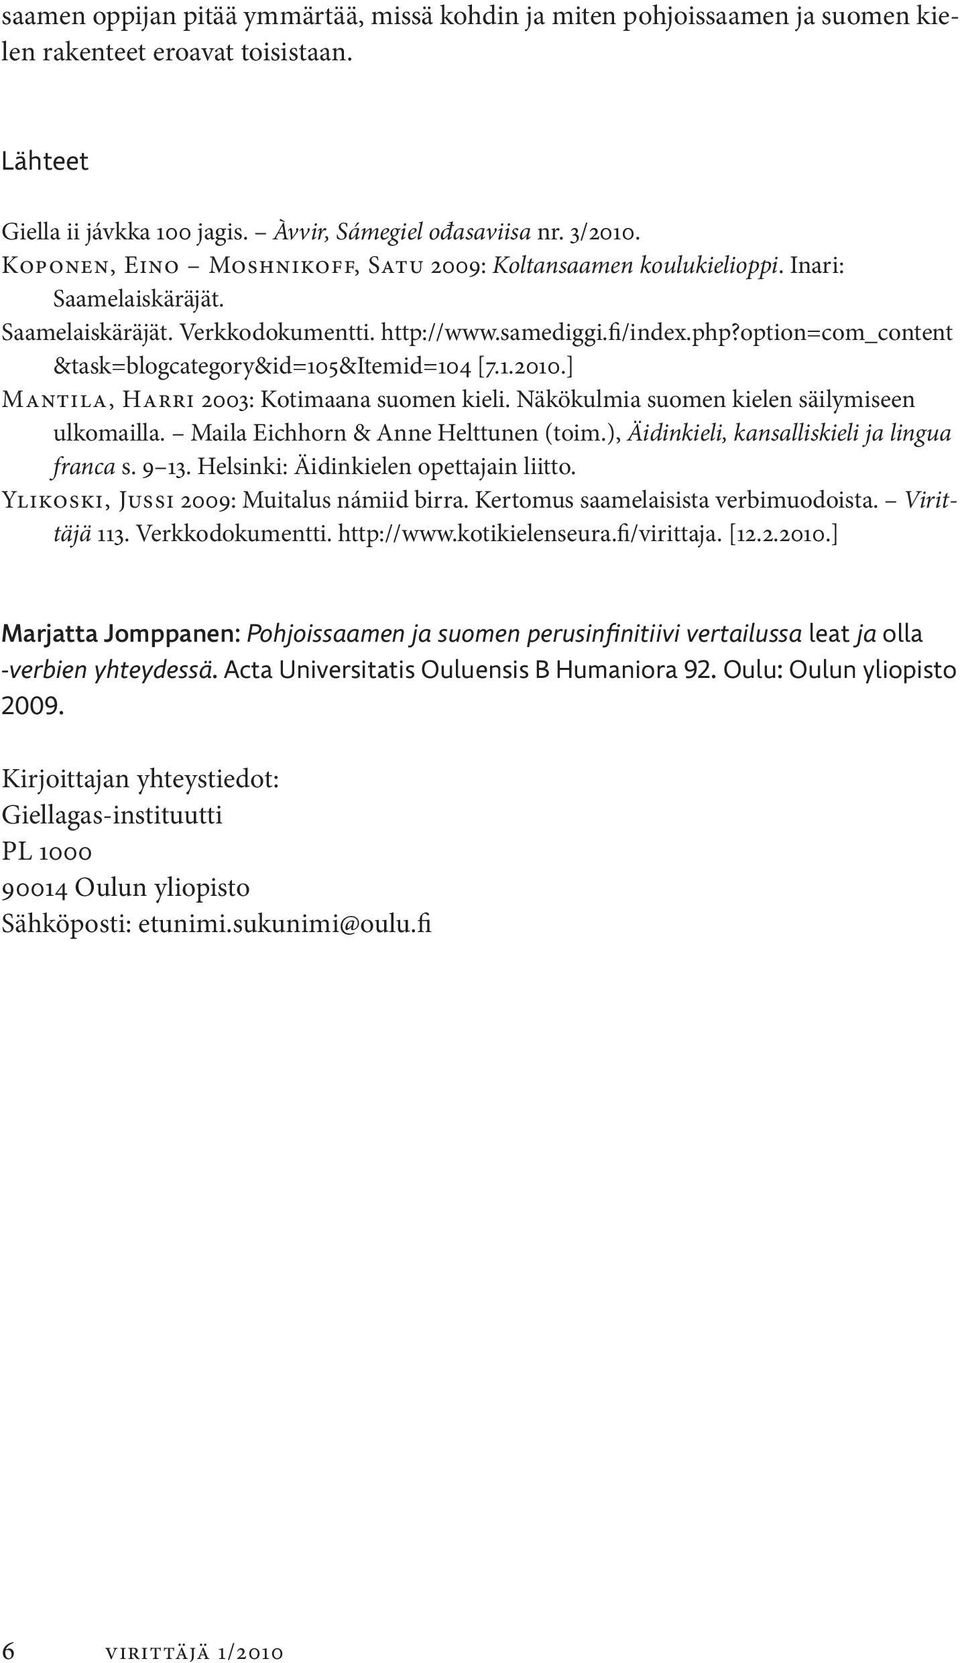 option=com_content &task=blogcategory&id=105&itemid=104 [7.1.2010.] Mantila, Harri 2003: Kotimaana suomen kieli. Näkökulmia suomen kielen säilymiseen ulkomailla. Maila Eichhorn & Anne Helttunen (toim.